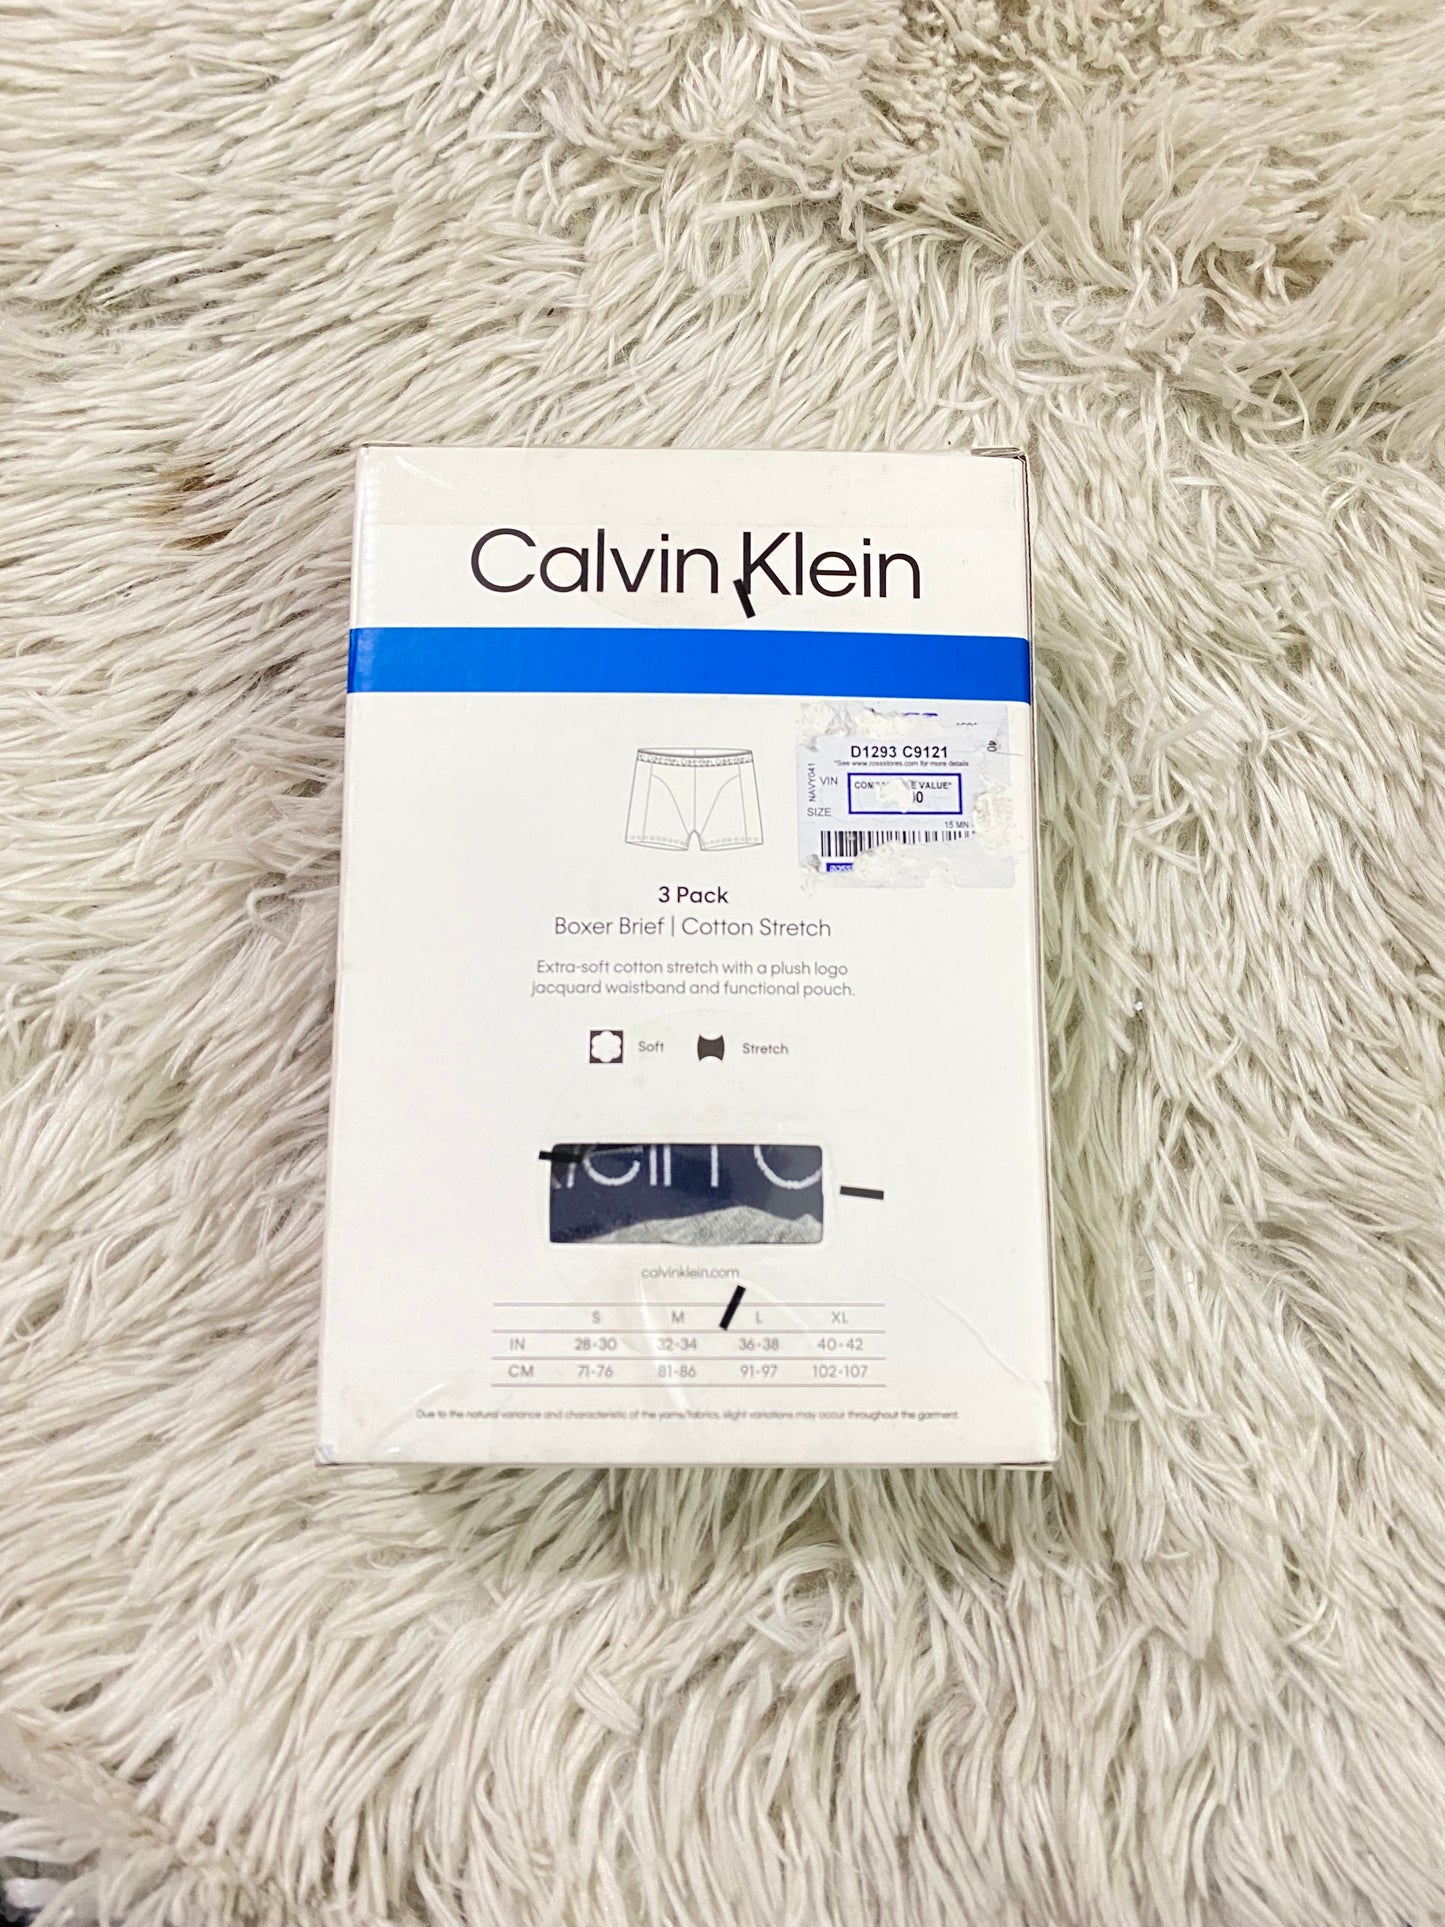 Boxer Calvin Klein original, pack de 3, azul marino liso, otro con letras de la marca y gris liso.